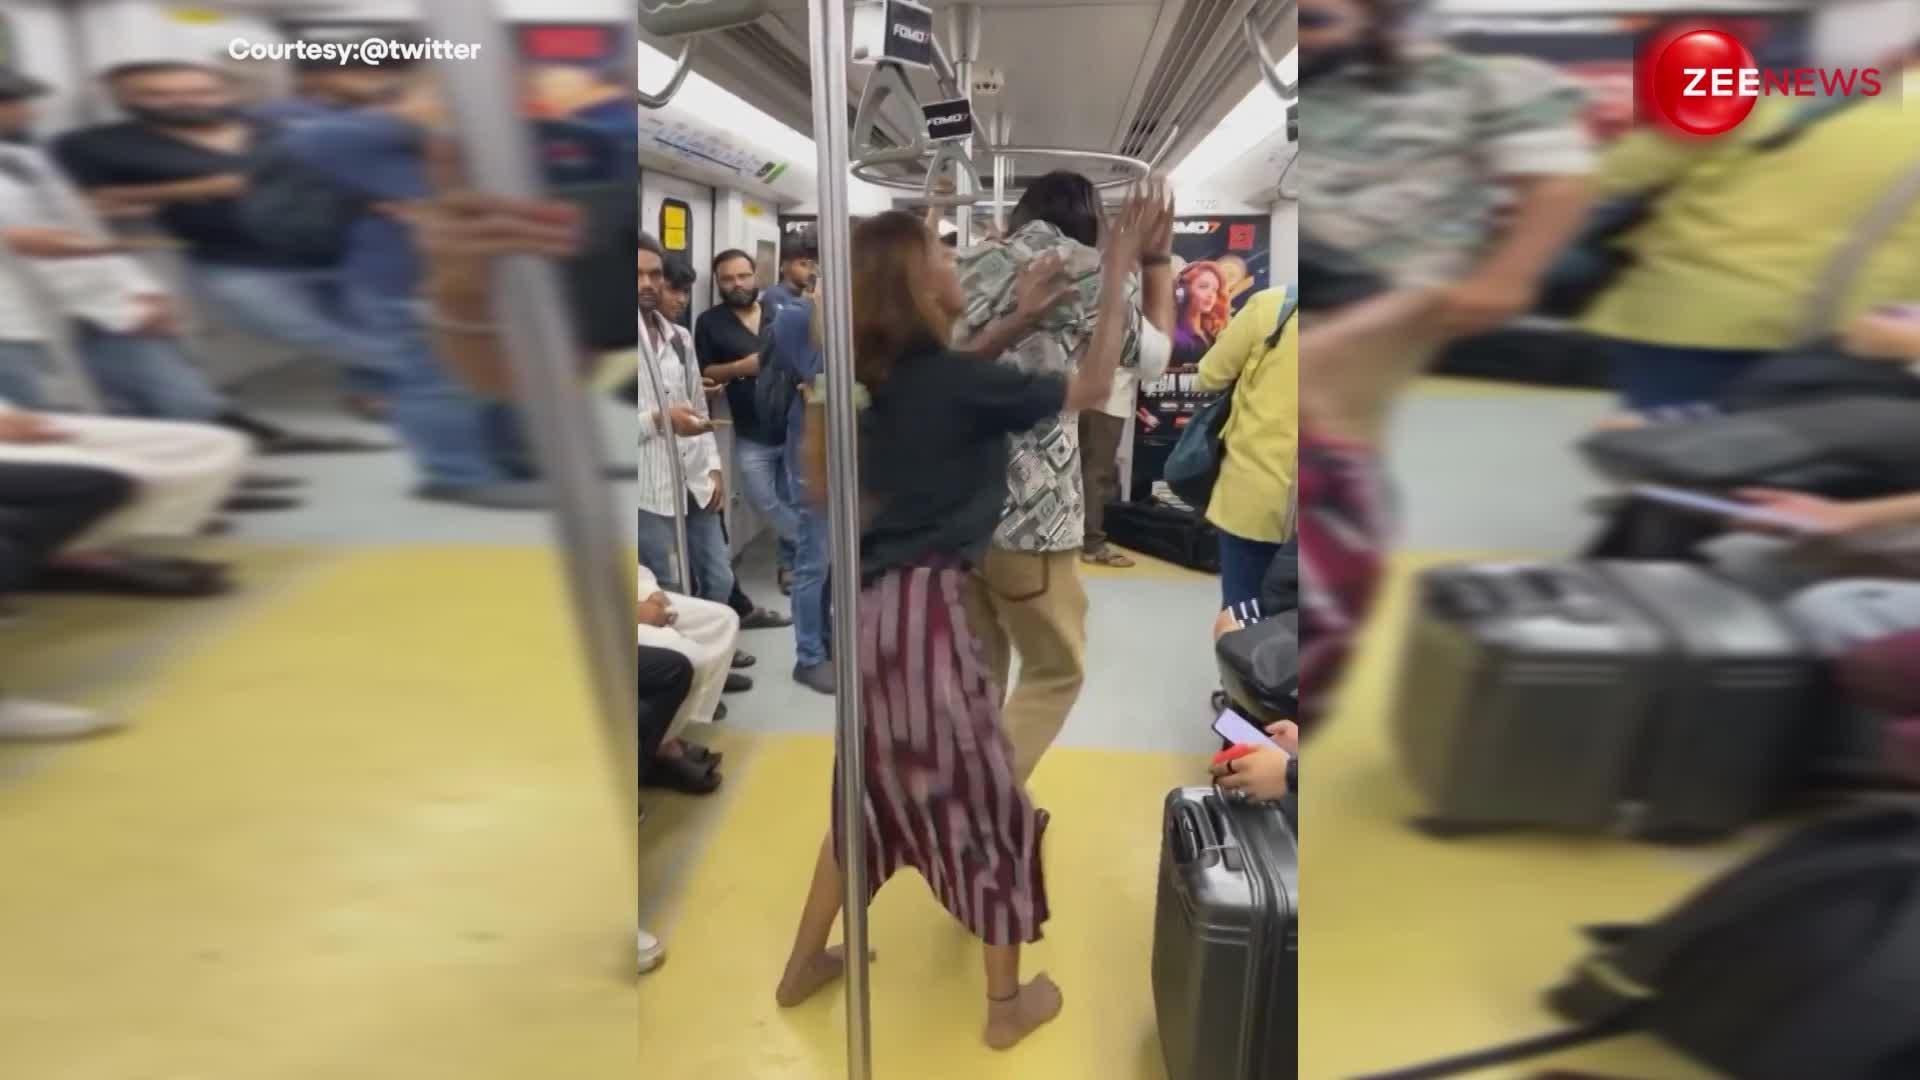 मेट्रो में जमीन पर लेट डांस करने लगी लड़की, वीडियो बनाने के लिए शर्म छोड़ किया पब्लिसिटी स्टंट!!